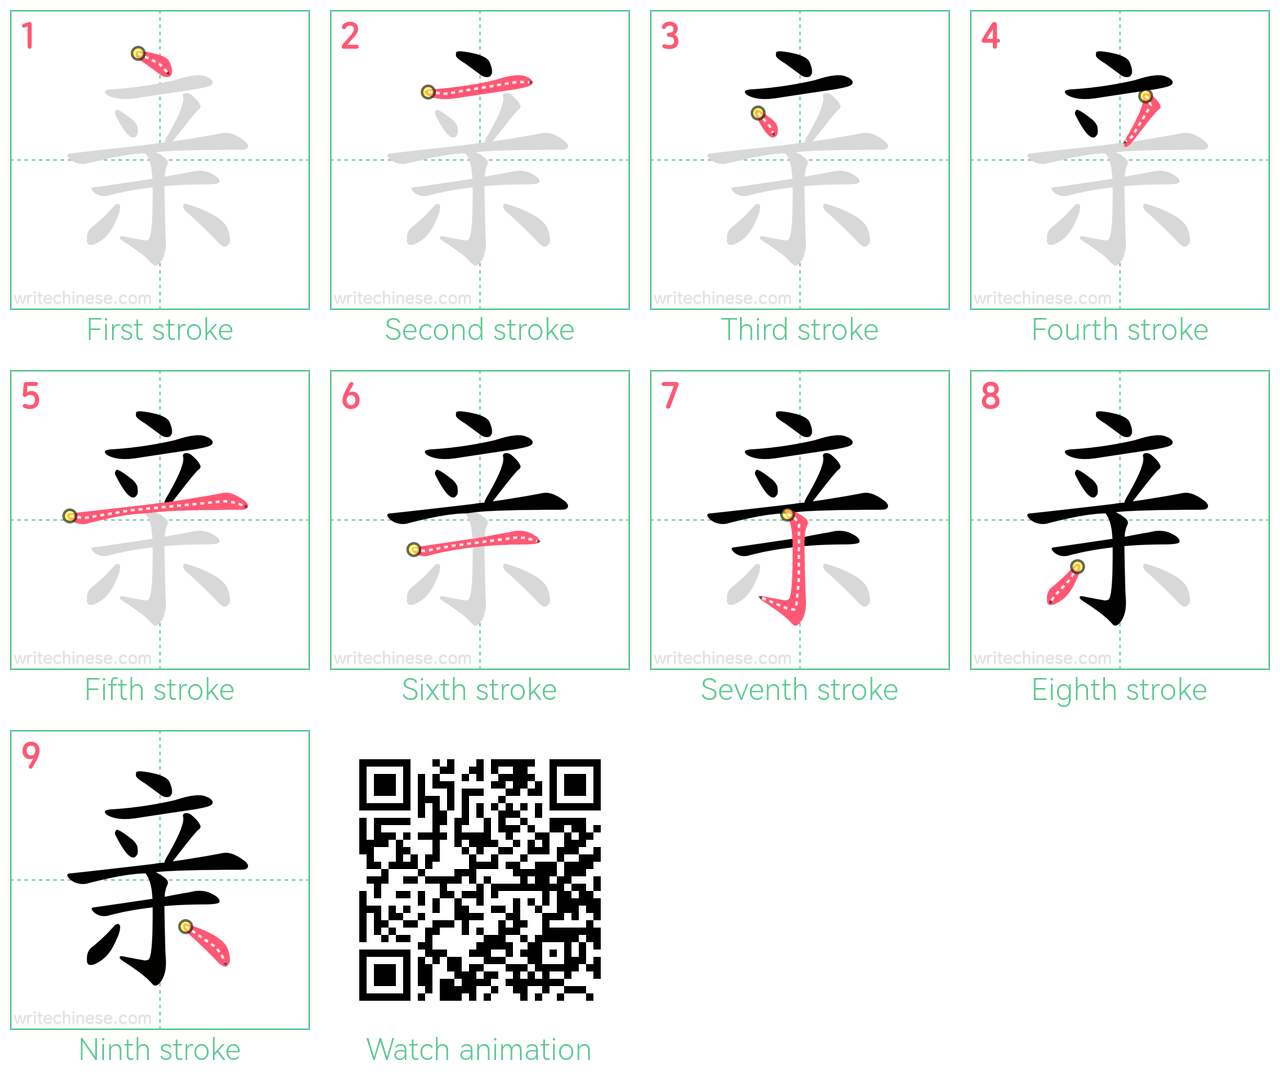 亲 step-by-step stroke order diagrams